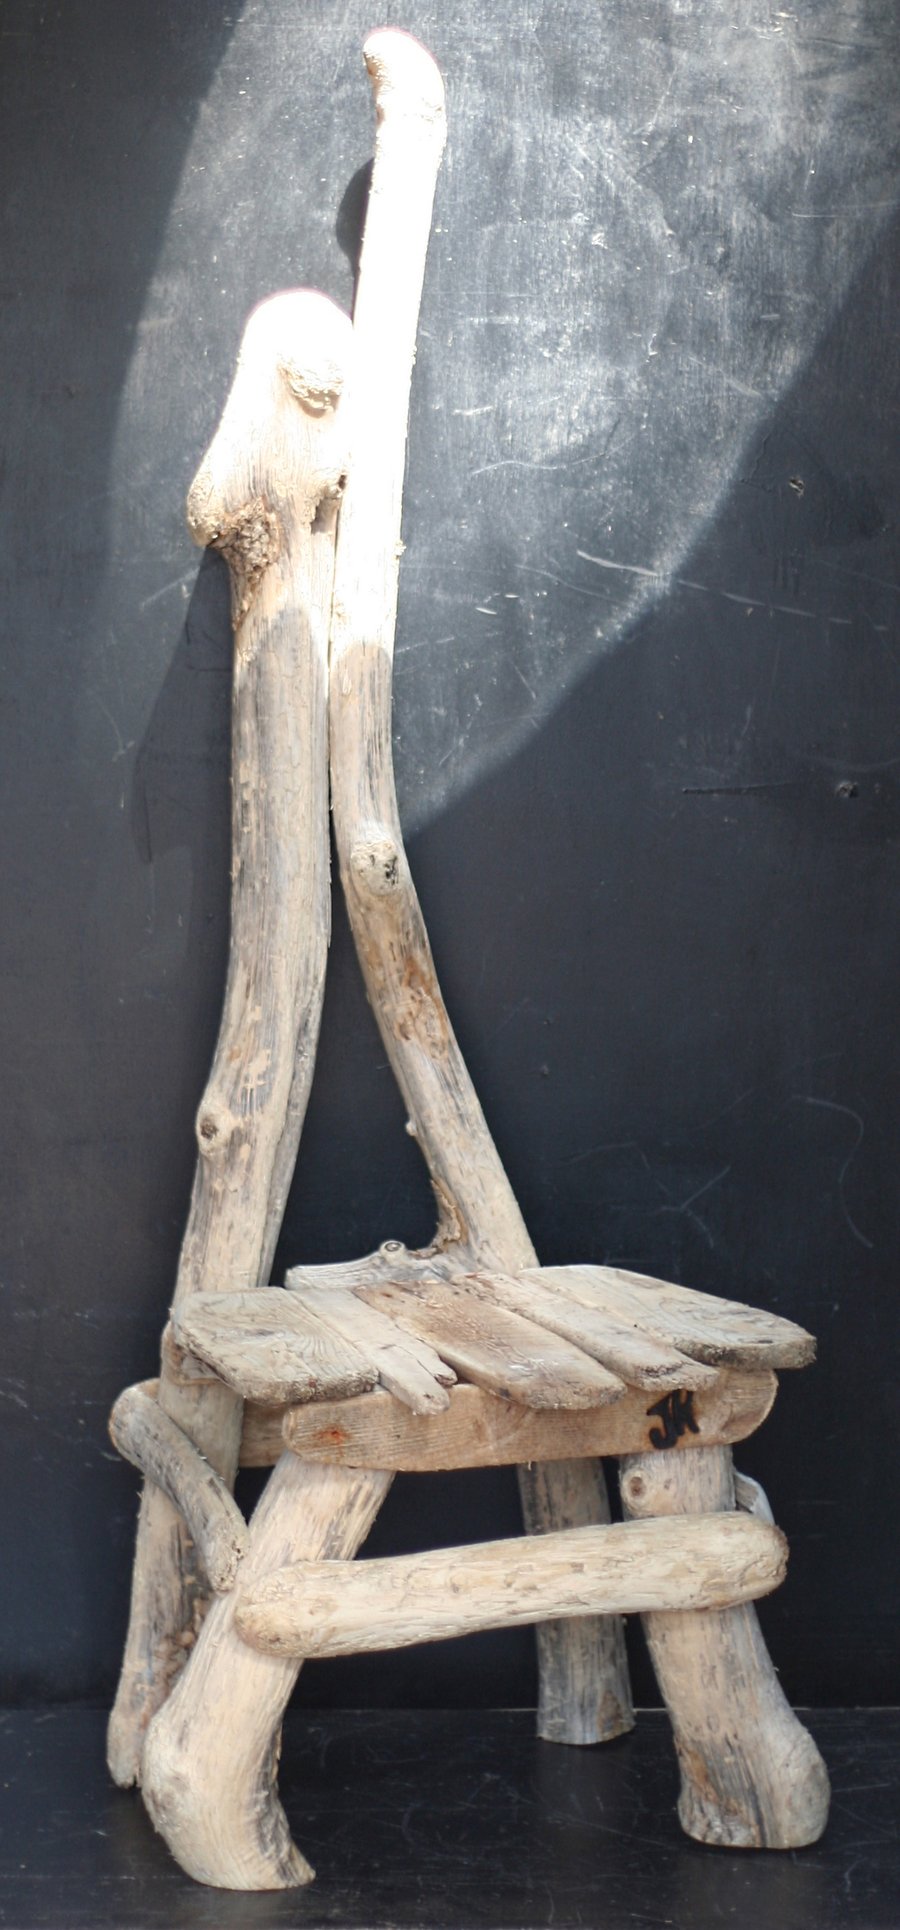 Driftwood Chair, Driftwood Seat, Driftwood Garden Chair, Drift wood Garden,140cm